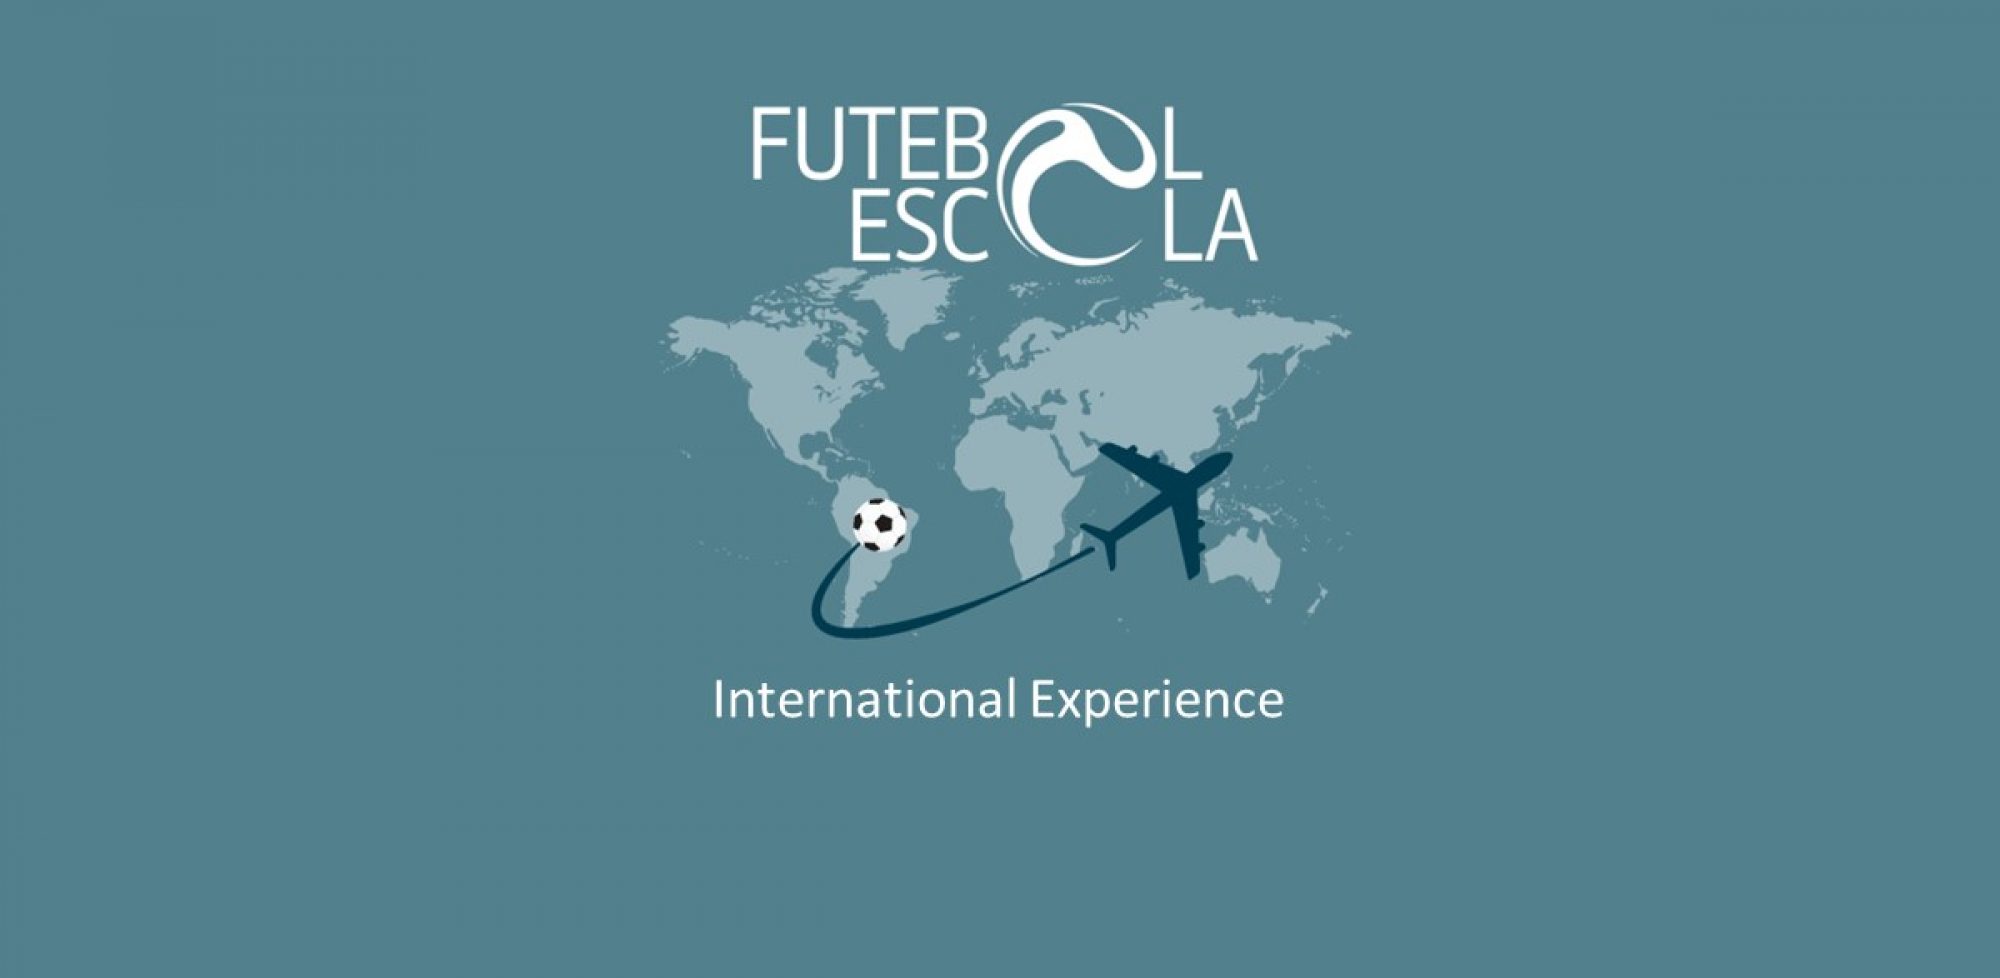 Escola de Futebol SPFC - Unidades Piloto, Santana e Anália Franco